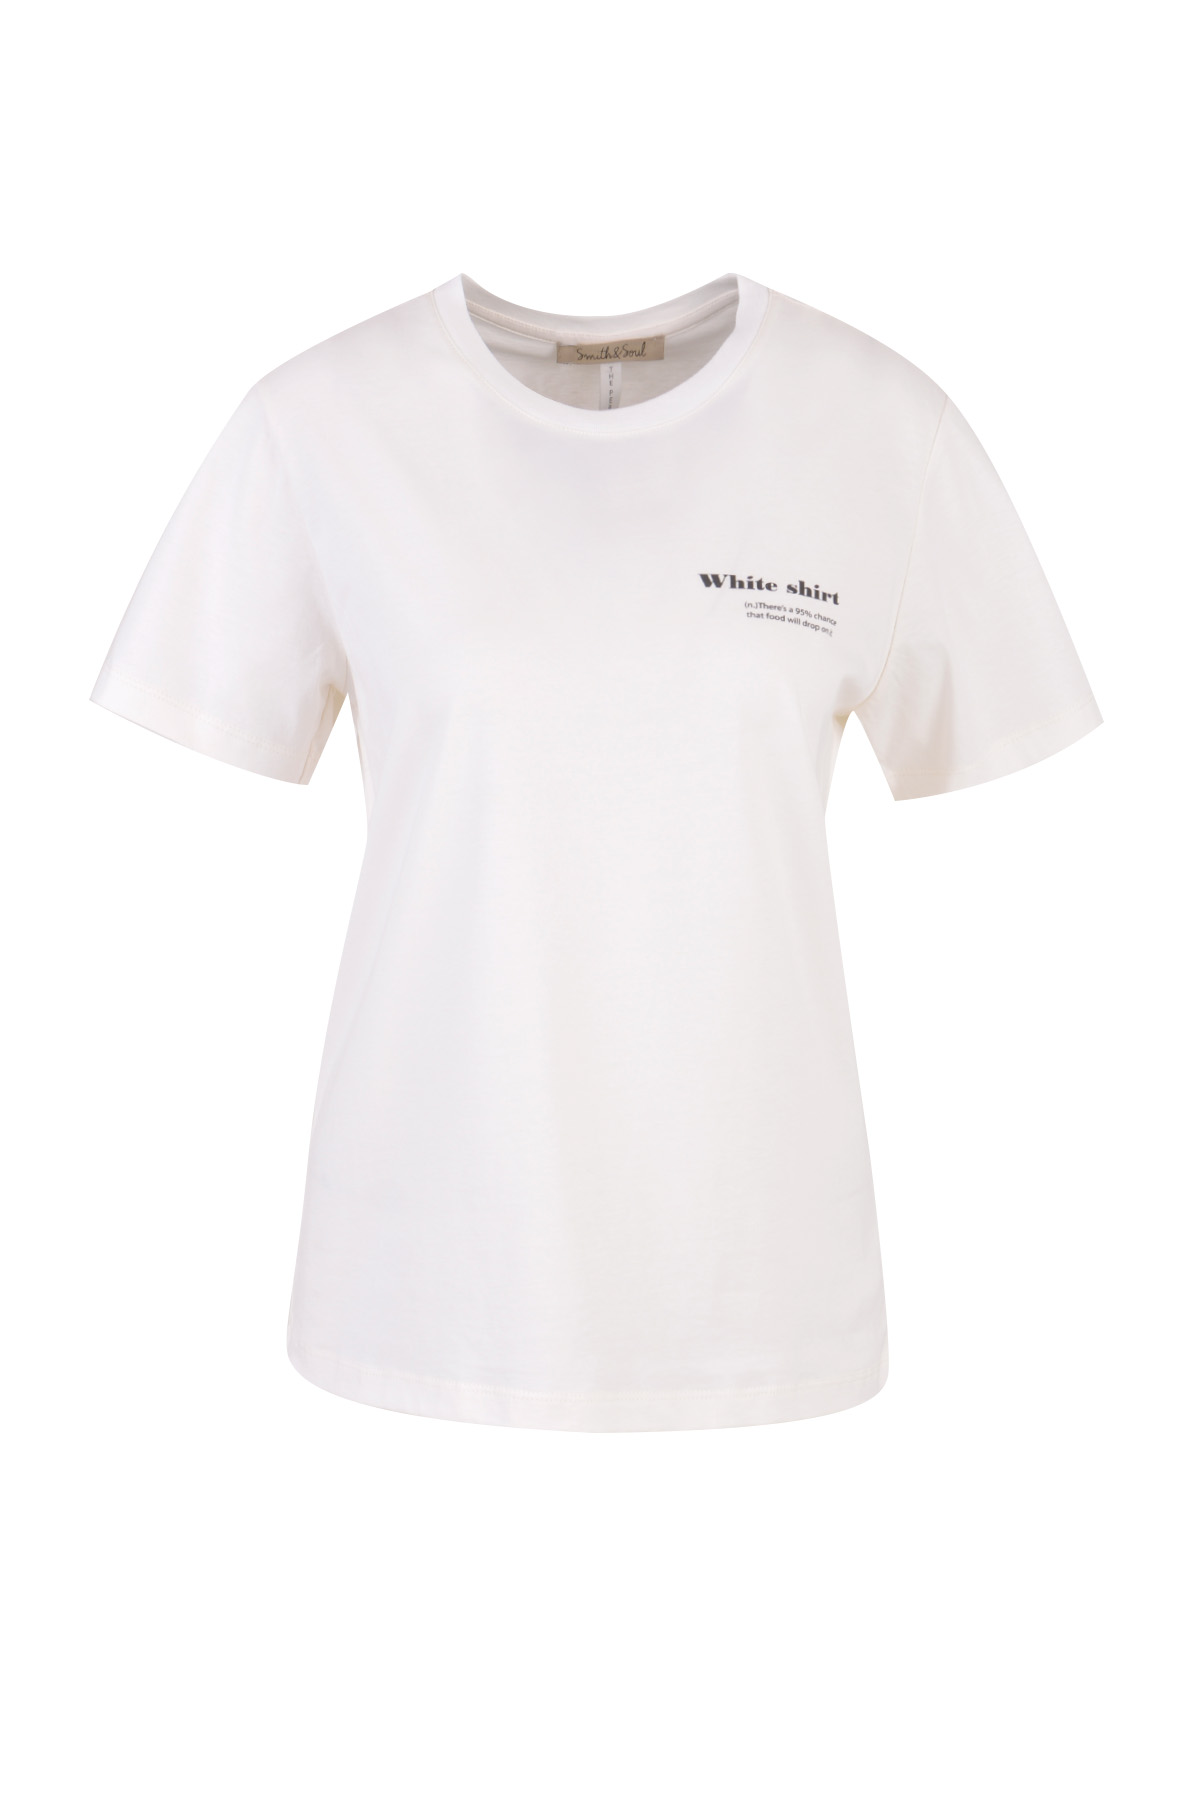 Tshirt White Shirt Print